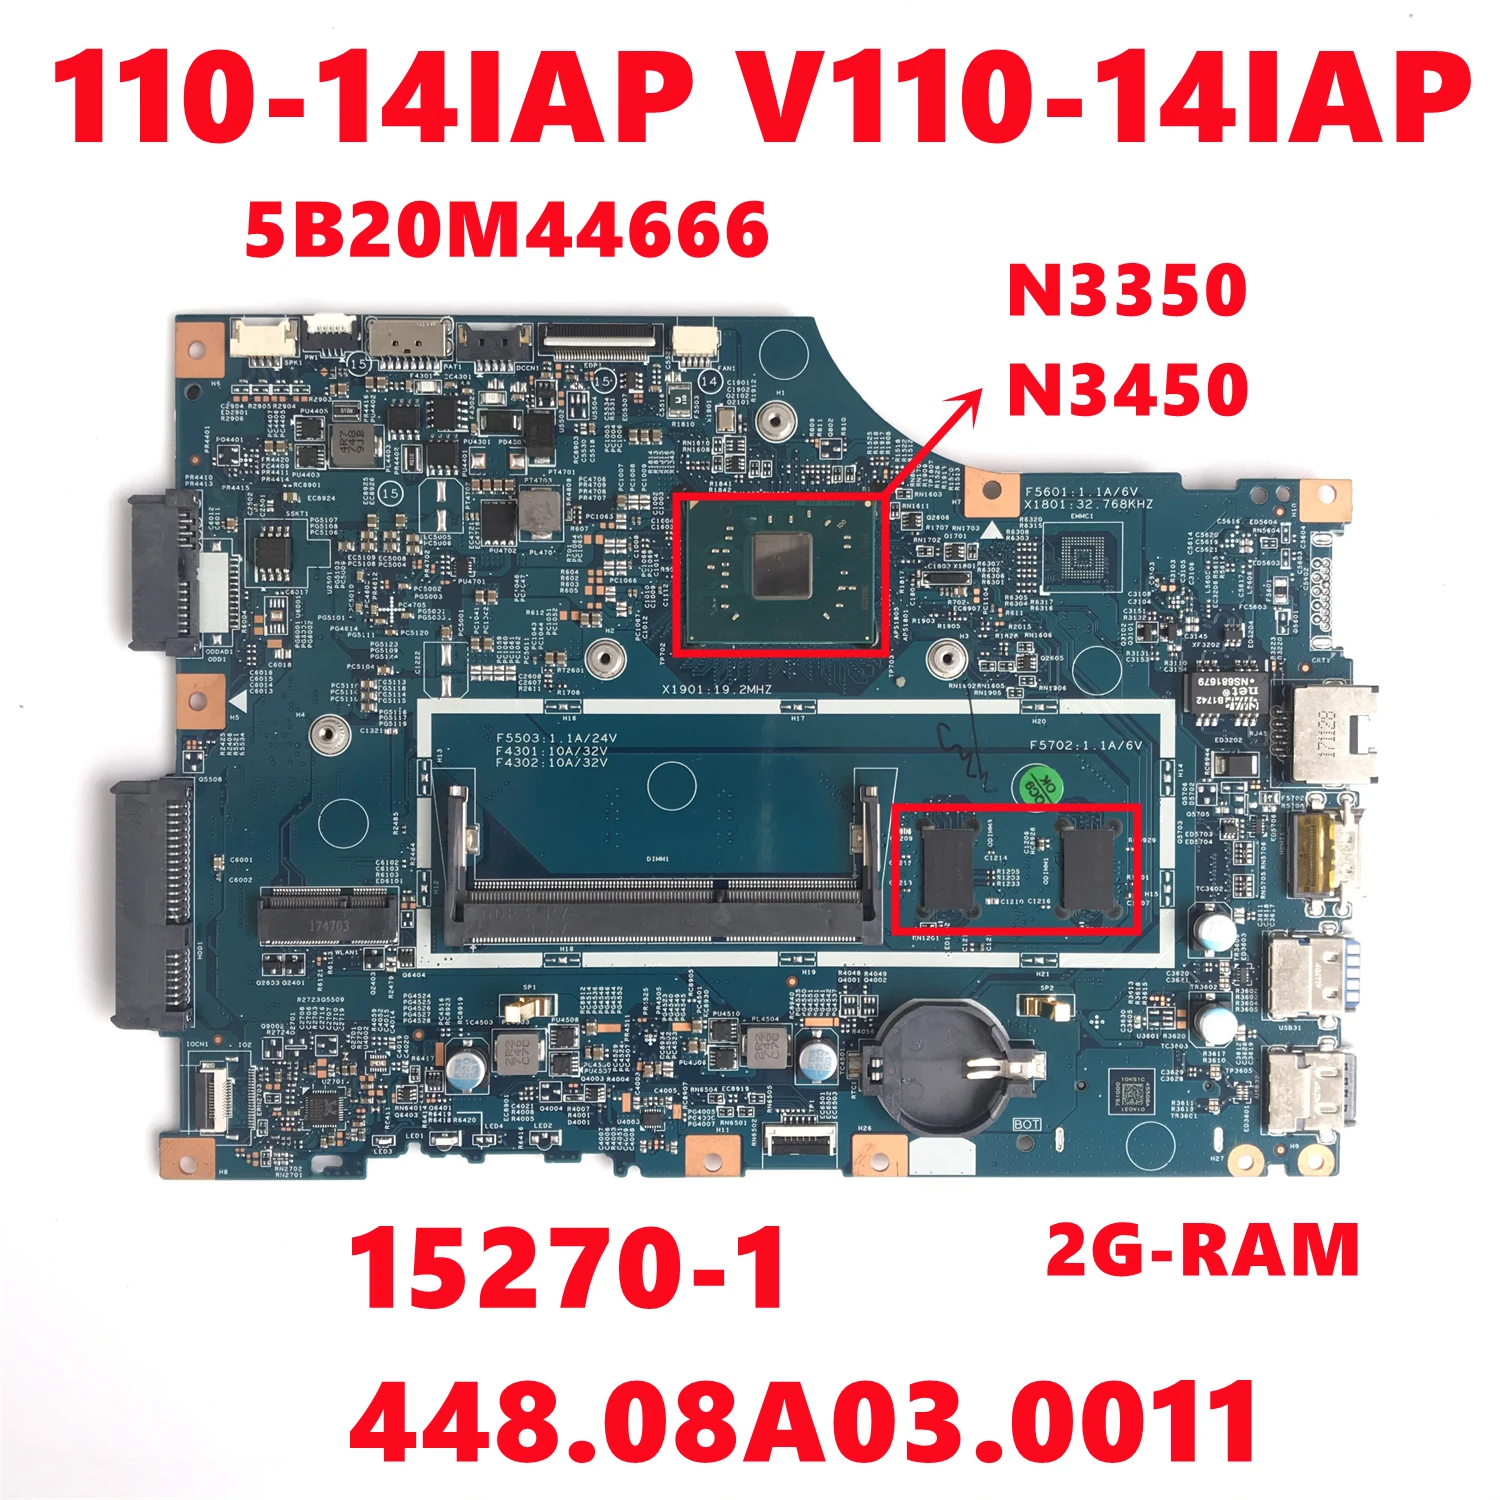 Фото 5B20M44666 для Lenovo V110 110-14IAP V110-14IAP Материнская плата ноутбука LV114A 15270-1 448.08A03.0011 с N3350 N3450 2G